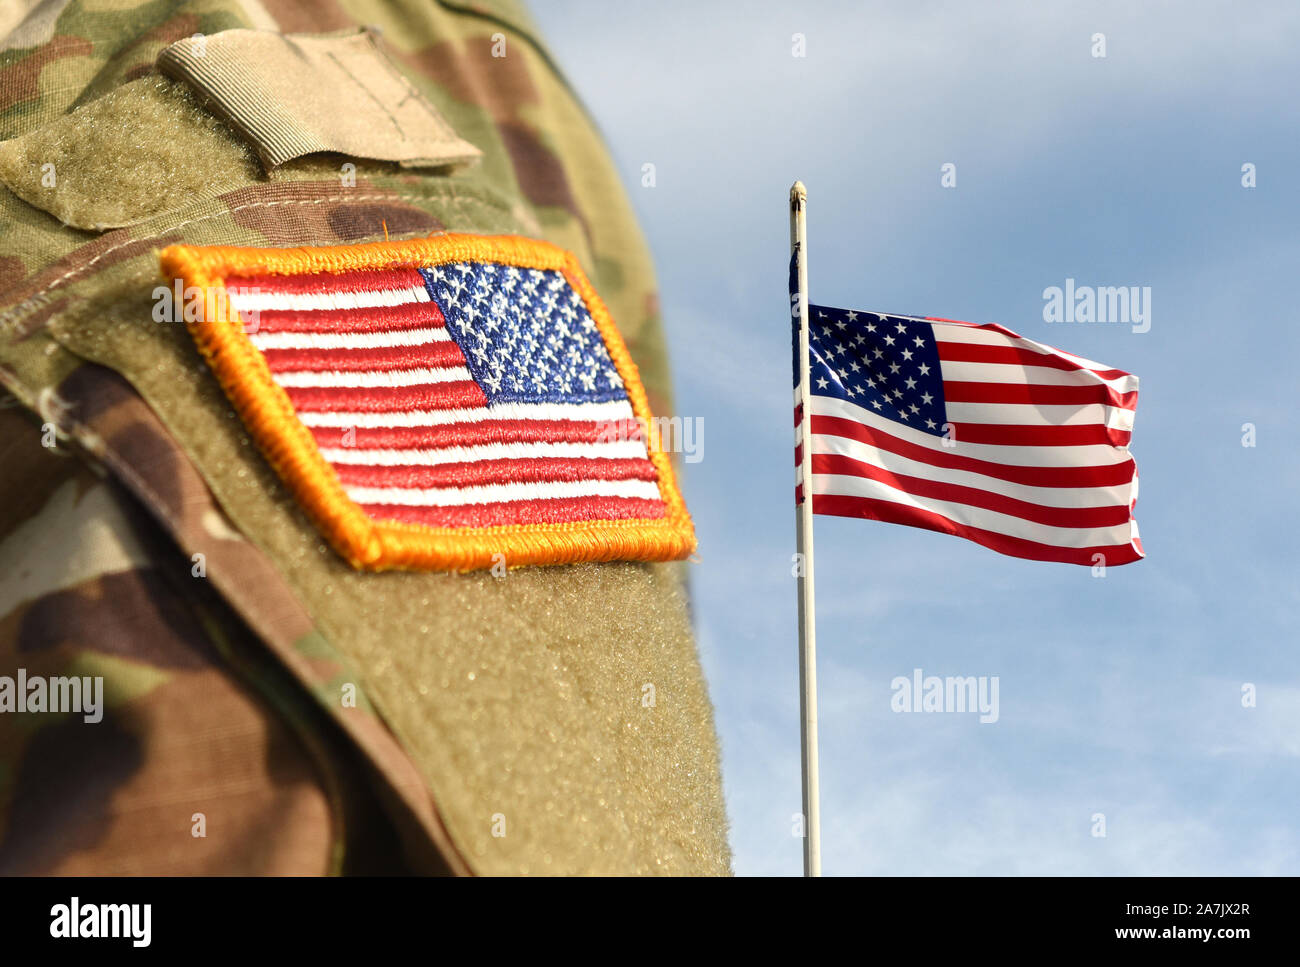 Veterans Day. US-Soldat. US-Armee. Militär der USA. US Army uniform Aufnäher Fahne und Flagge der USA das Weben in den Himmel. Stockfoto